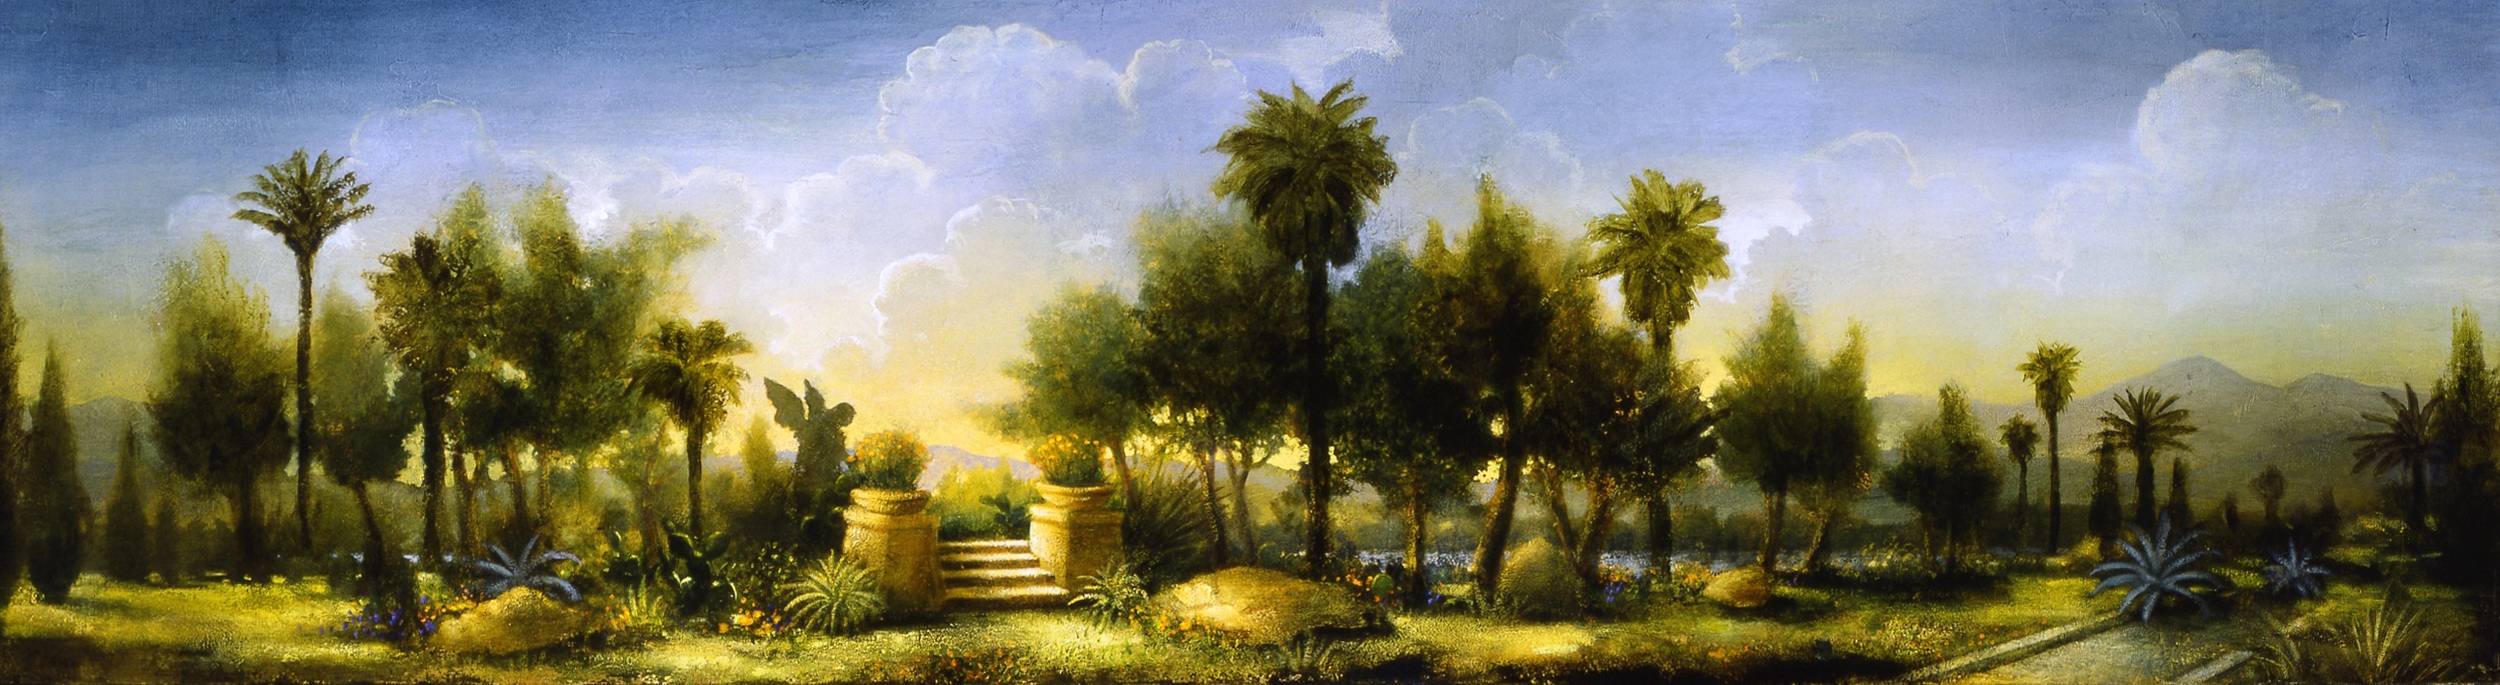 El Jardin de Los Angeles, 2005-2006